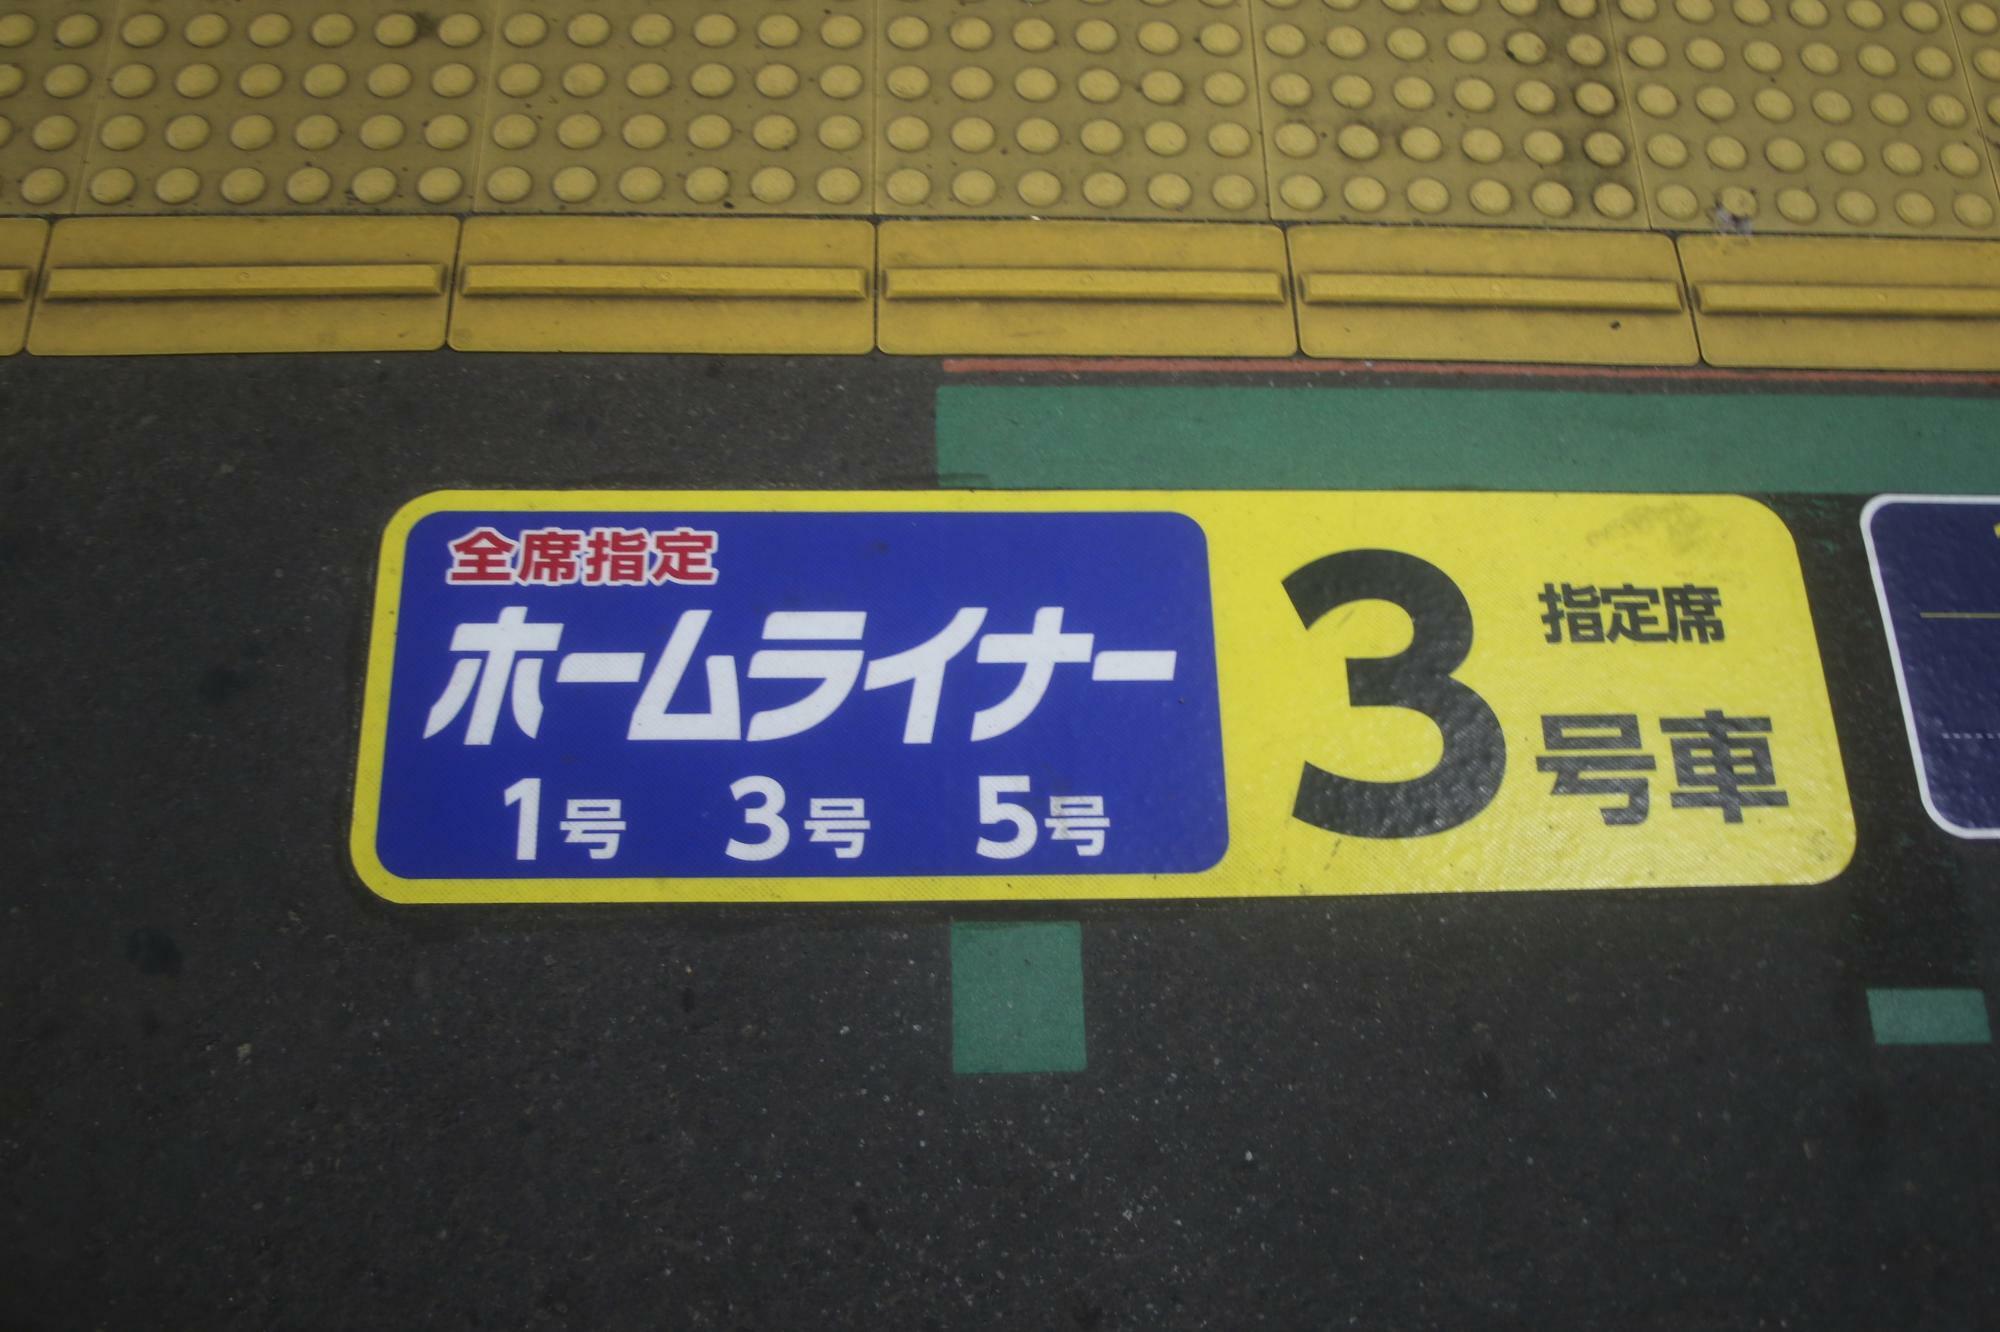 3号車位置(1号、3号、5号)